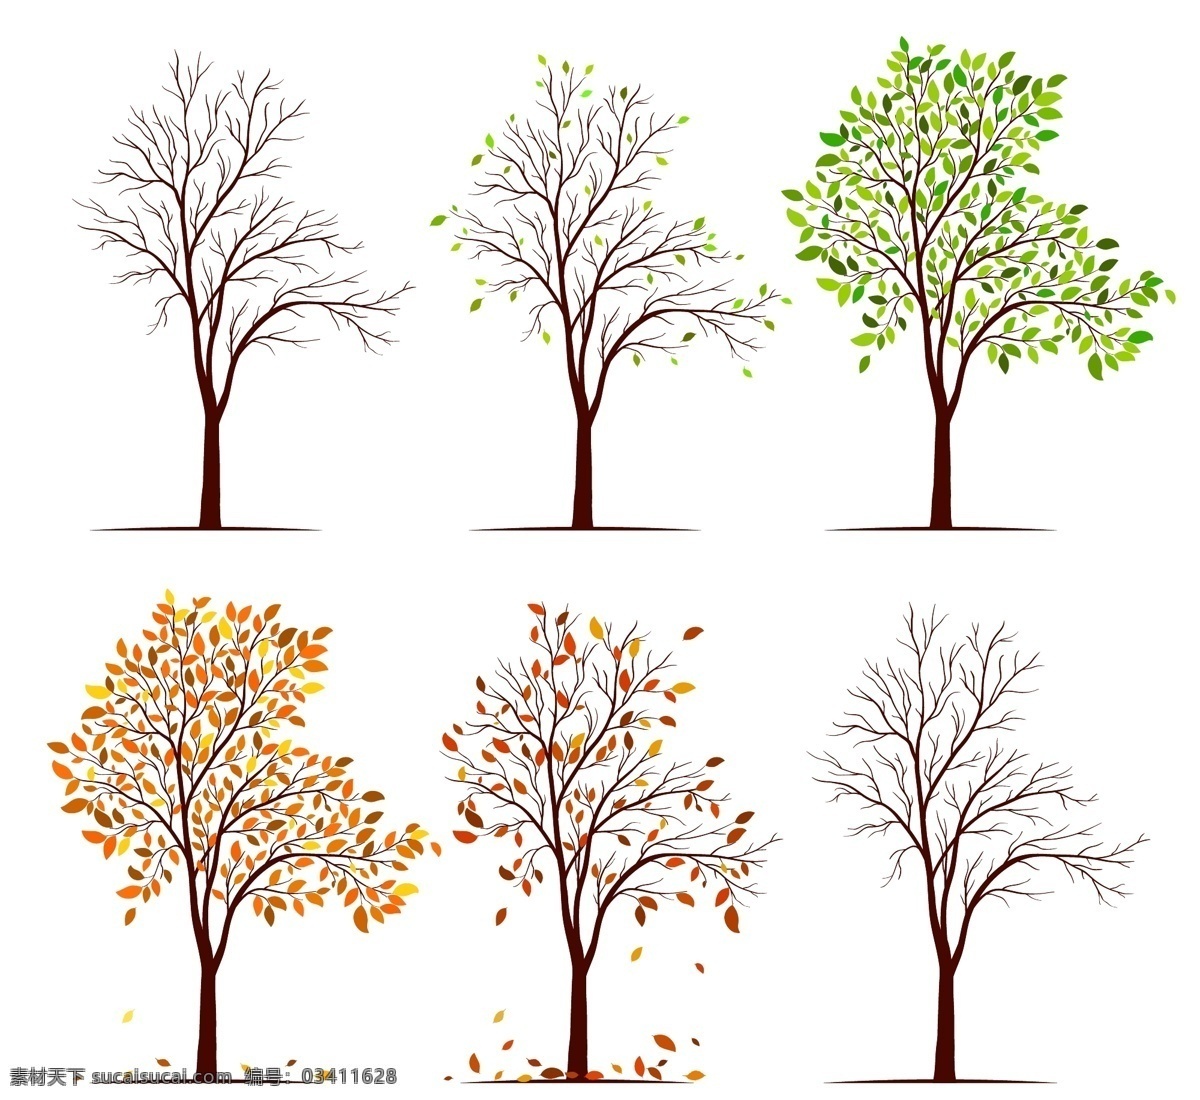 大树图片 矢量树 树叶 树干 树枝 可以编辑 文化艺术 绘画书法